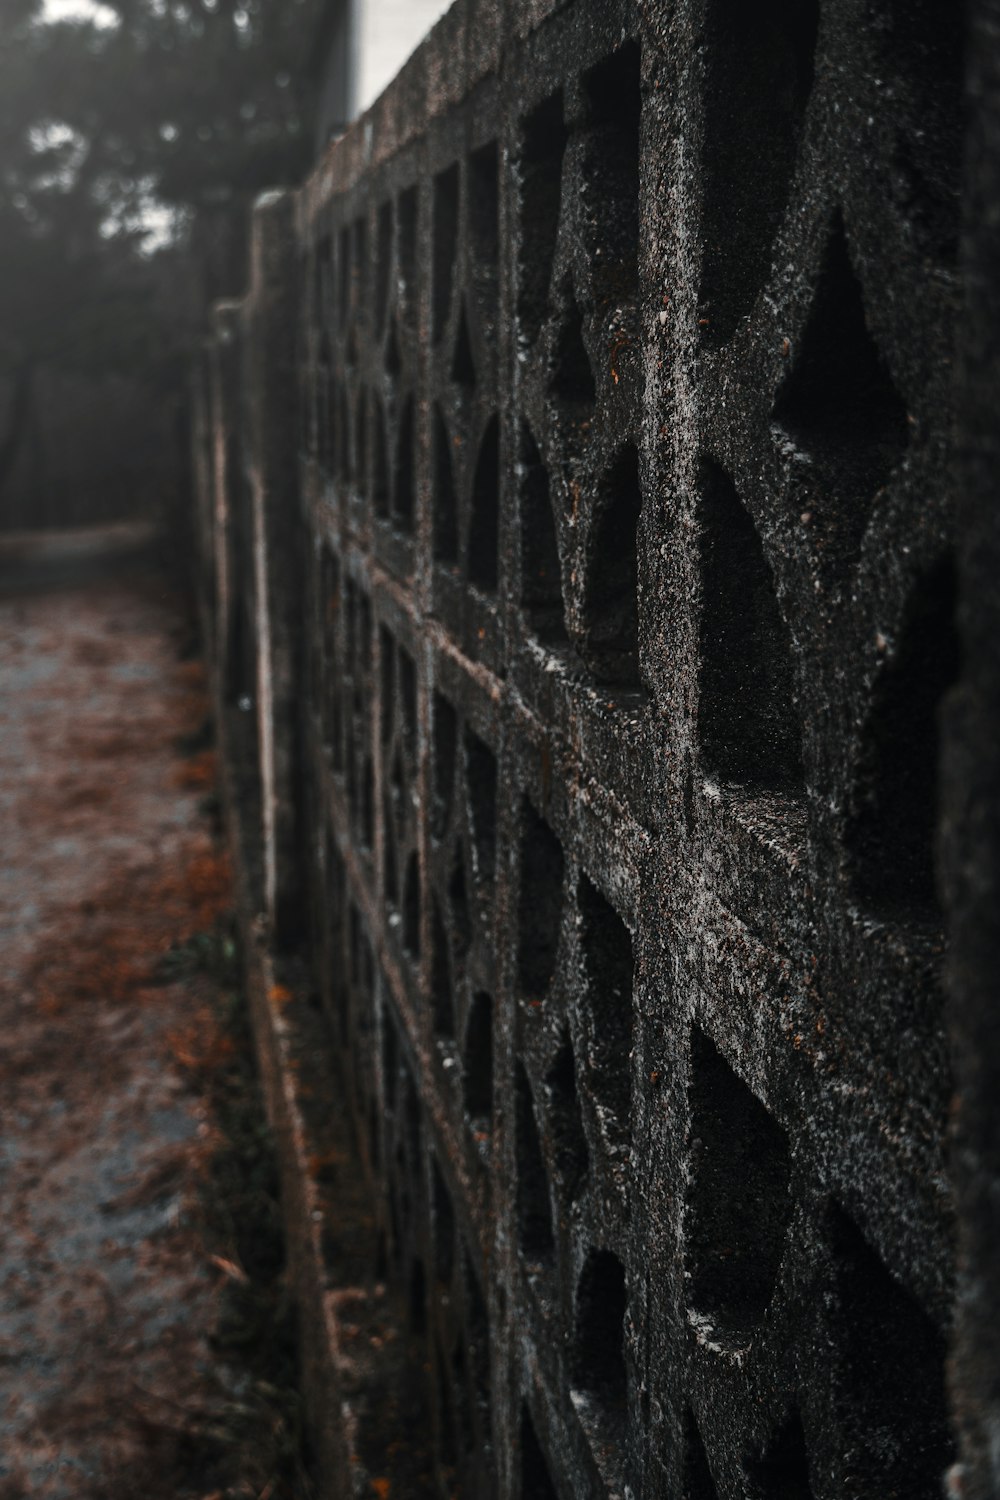 black metal fence on brown dirt road